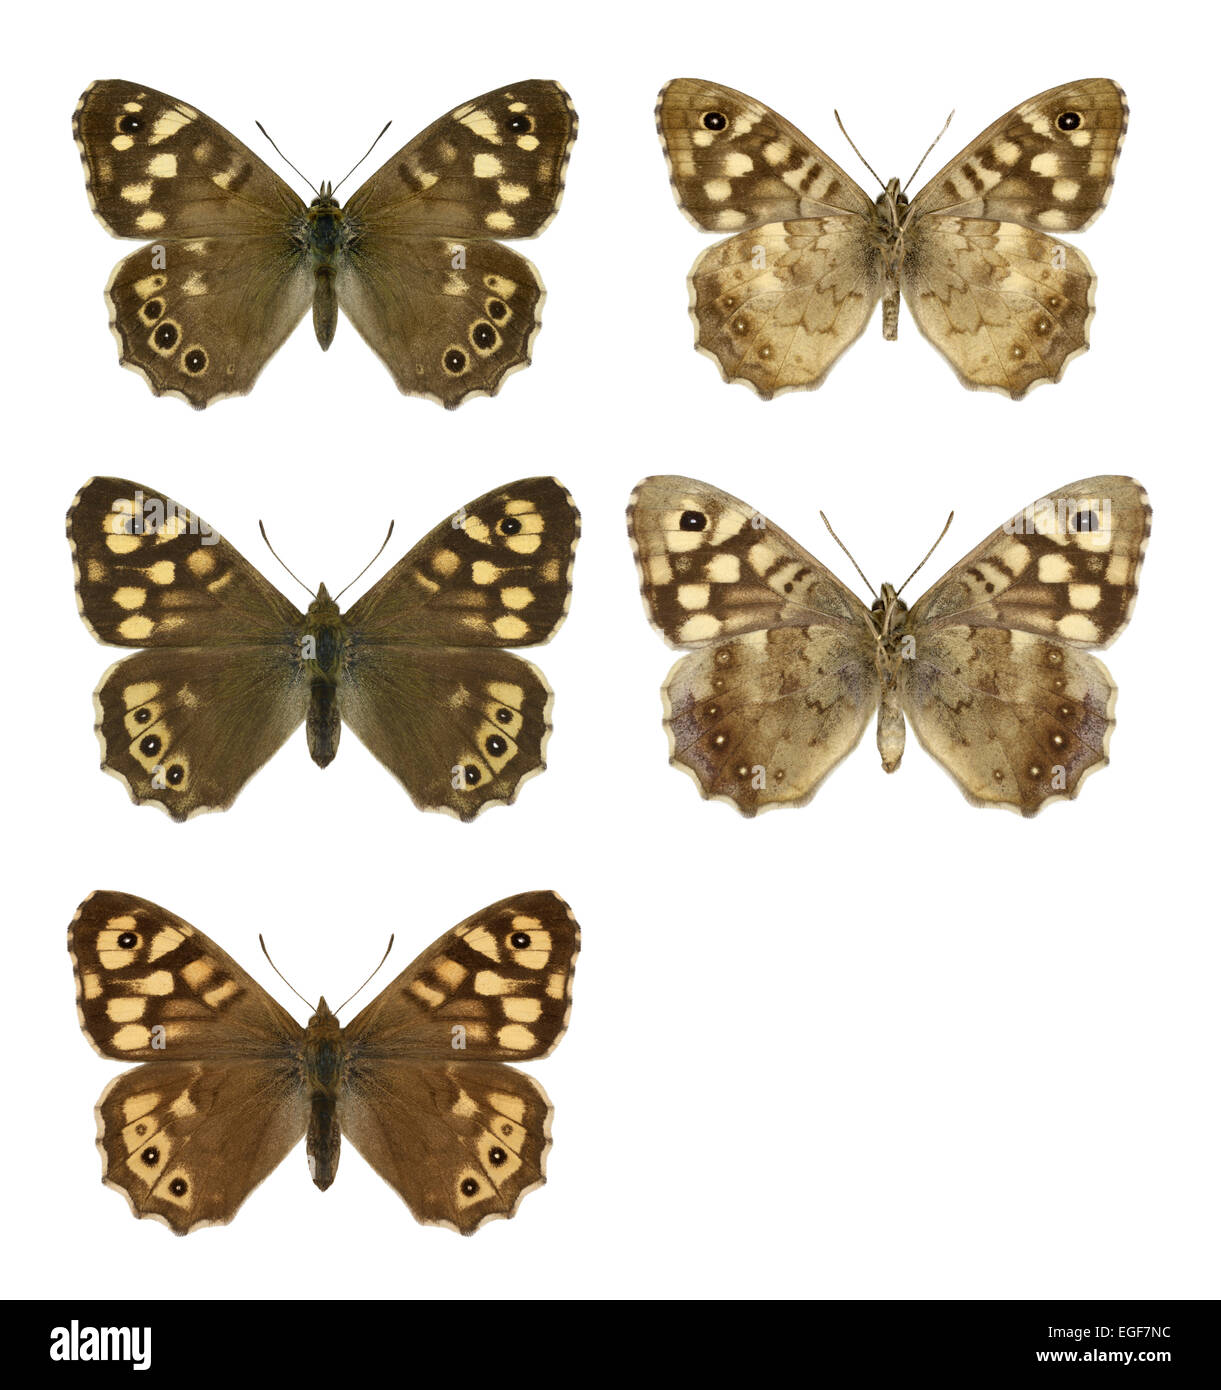 Madera - Pararge aegeria moteado - macho (fila superior) - hembra (fila central) - ssp. insula de Scilly (fila inferior). Foto de stock